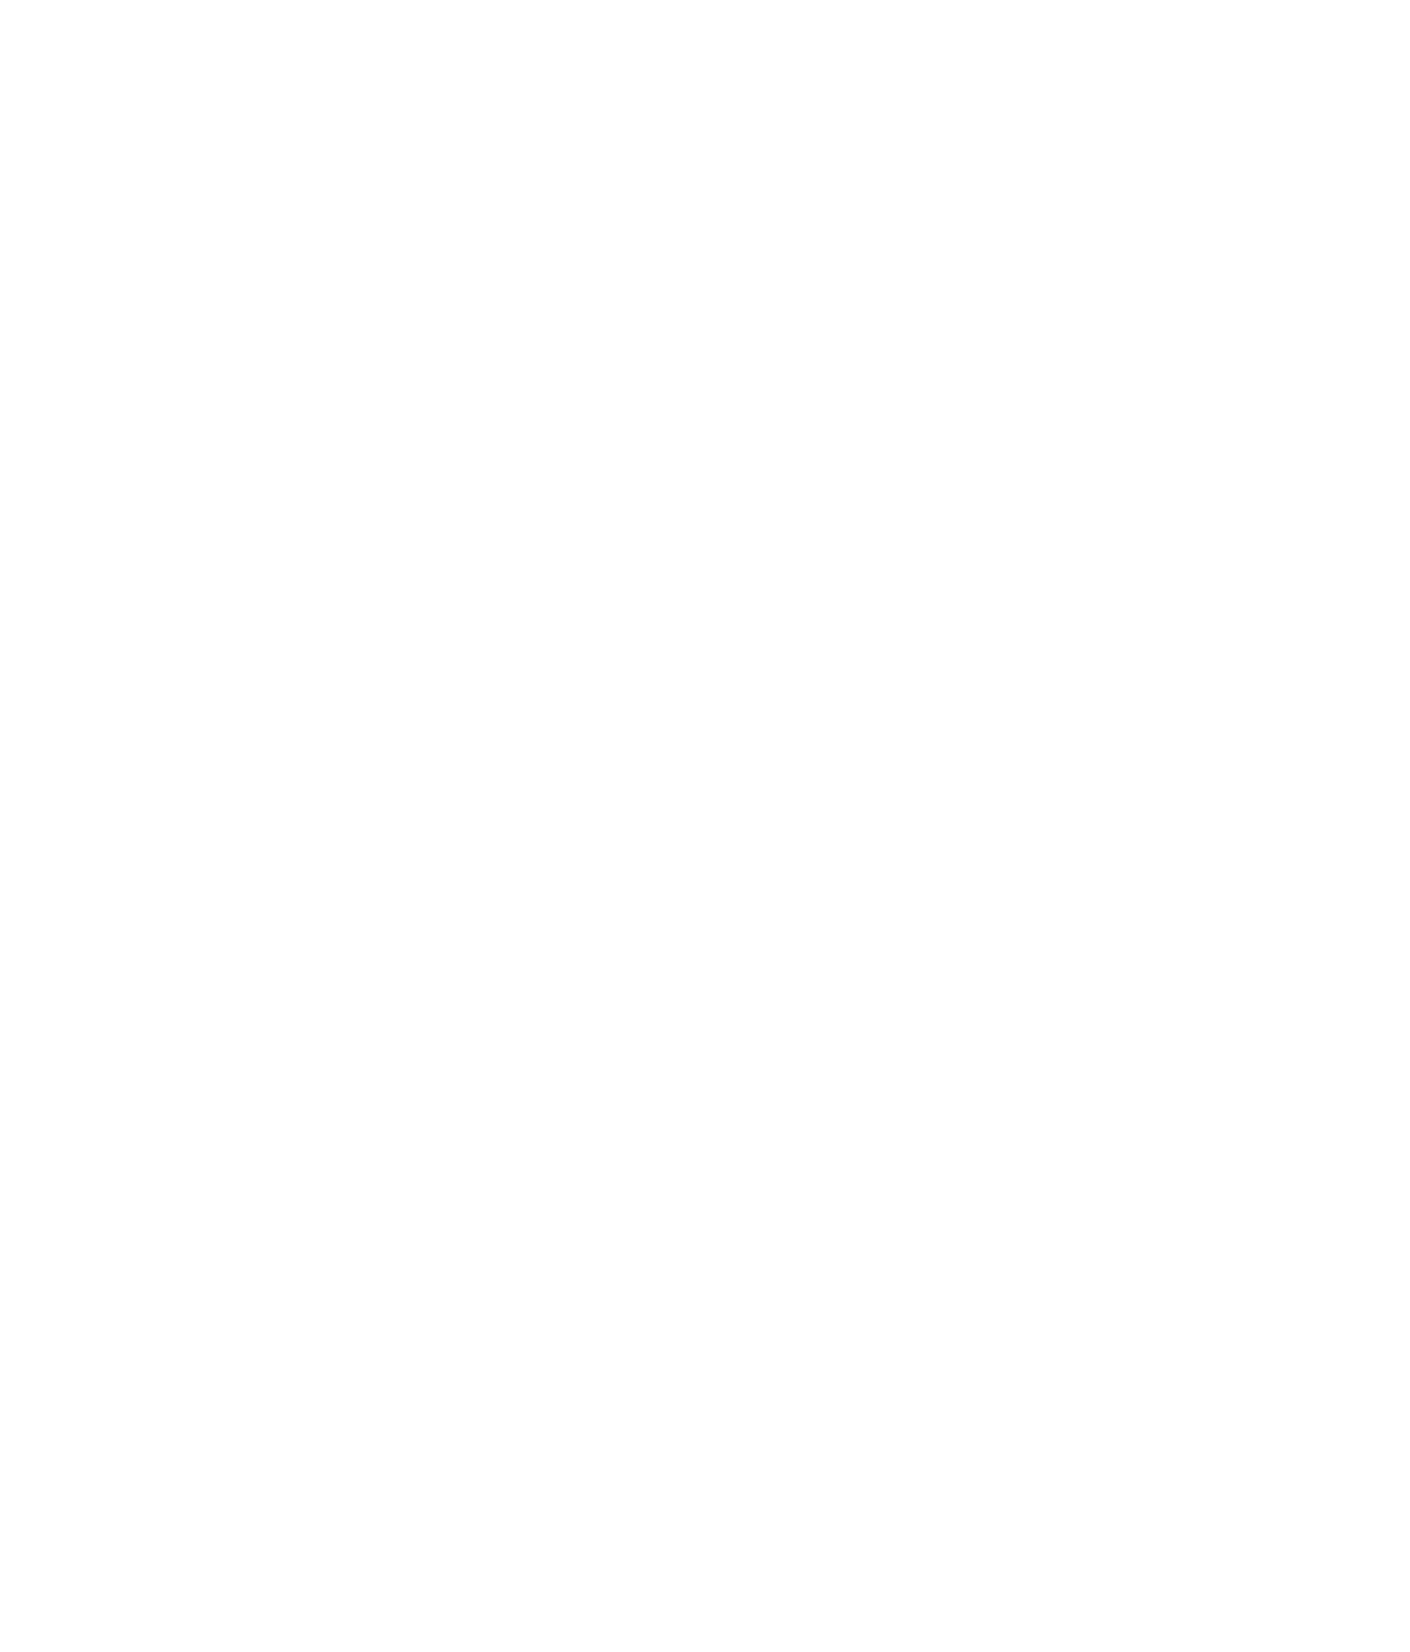 Qurate Retail Group logo pour fonds sombres (PNG transparent)